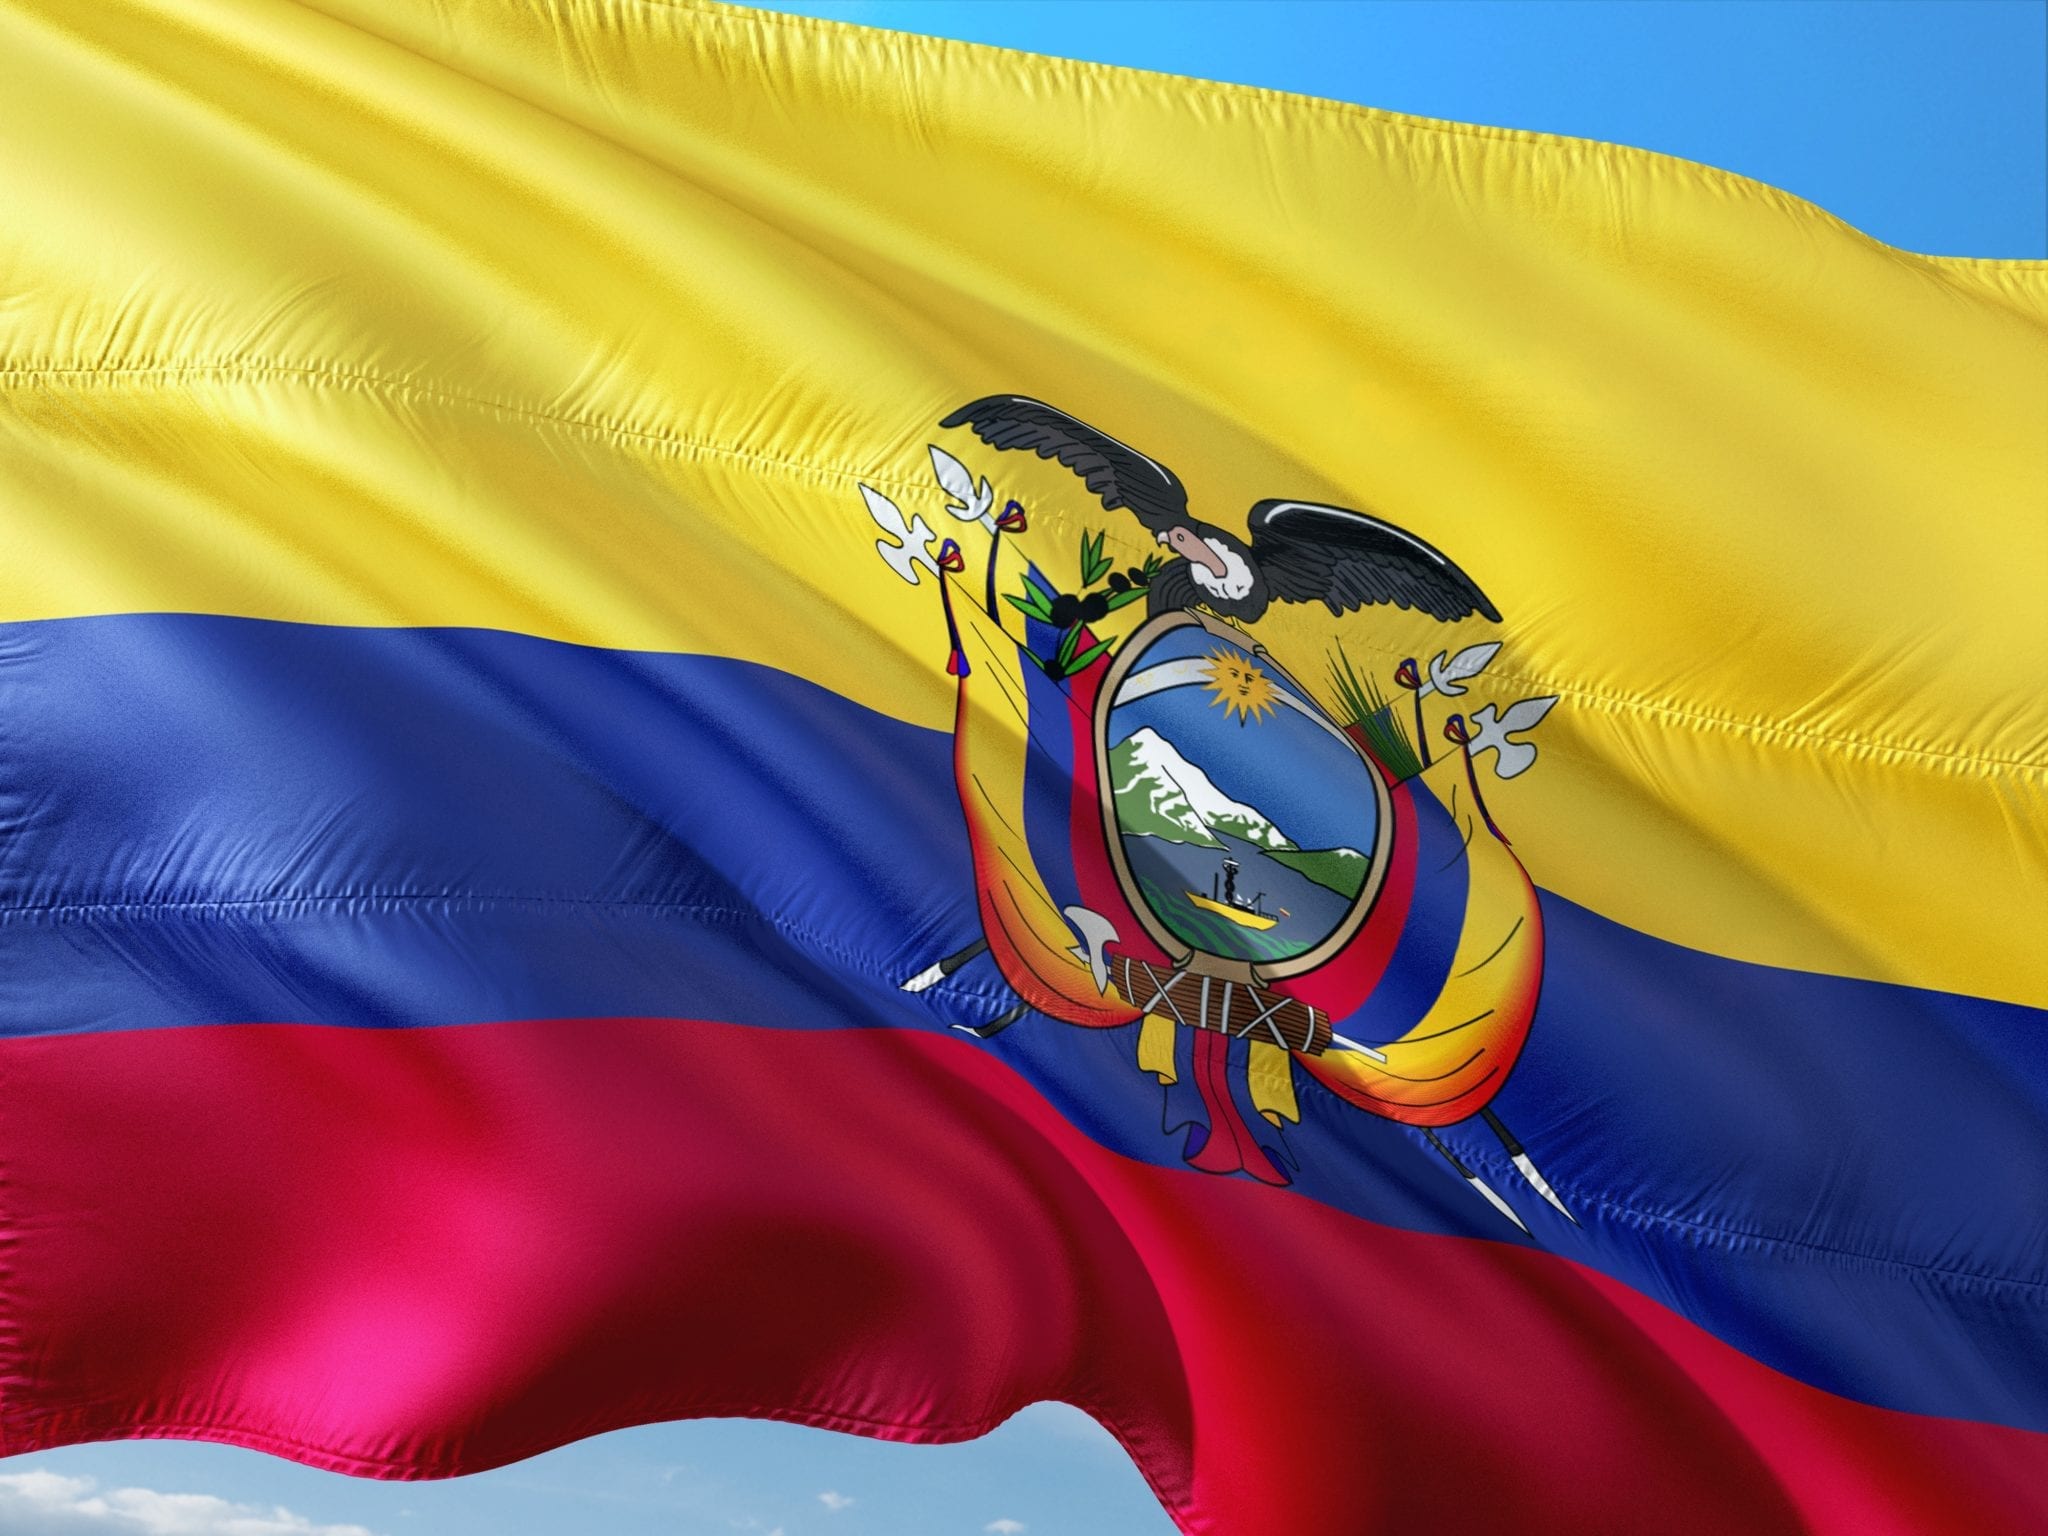 L’Ecuador al voto premia ancora il Correismo